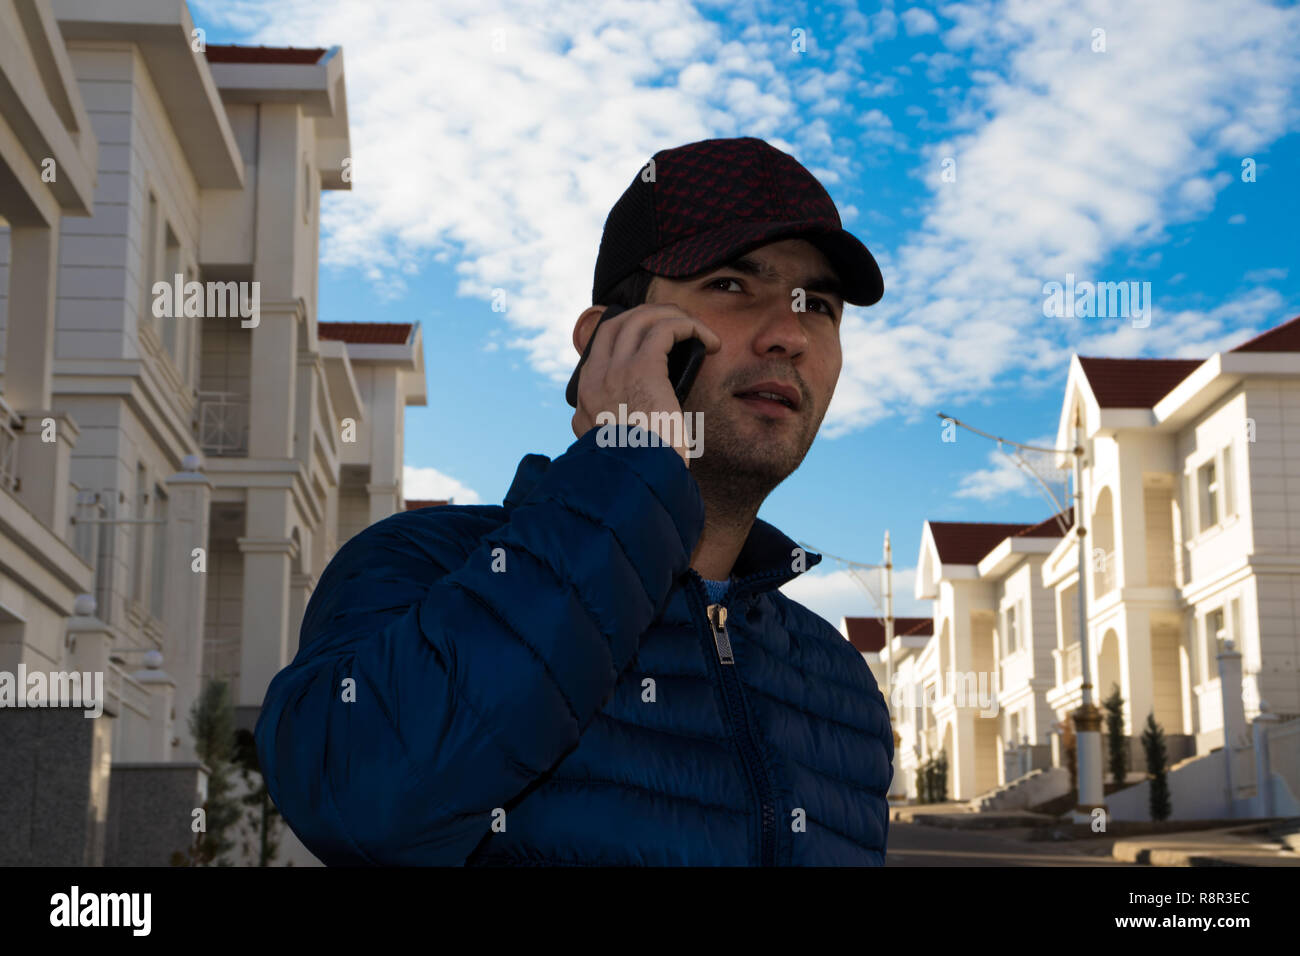 Immobilienmakler vor Villen in einem Gespräch per Handy mit einem potenziellen Kunden auf einem Hintergrund von einem blauen bewölkten Himmel Stockfoto